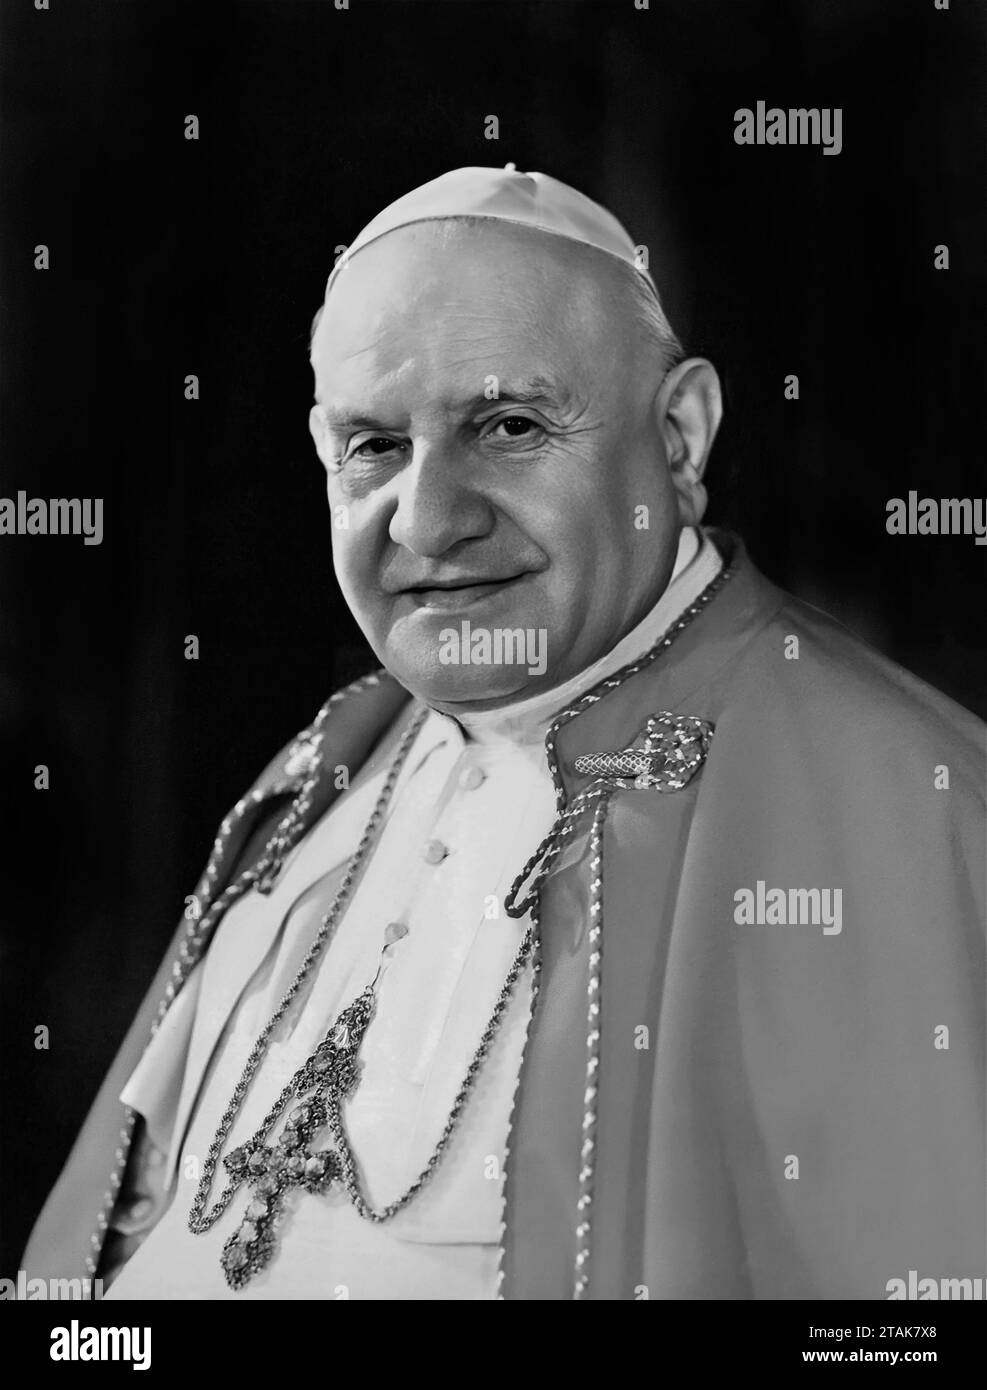 Papa Giovanni XXIII. Ritratto dell'ex capo della chiesa cattolica, Papa Giovanni XXIII (nato Angelo Giuseppe Roncalli, 1881-1963), fotografia ufficiale, c. 1958-63 Foto Stock